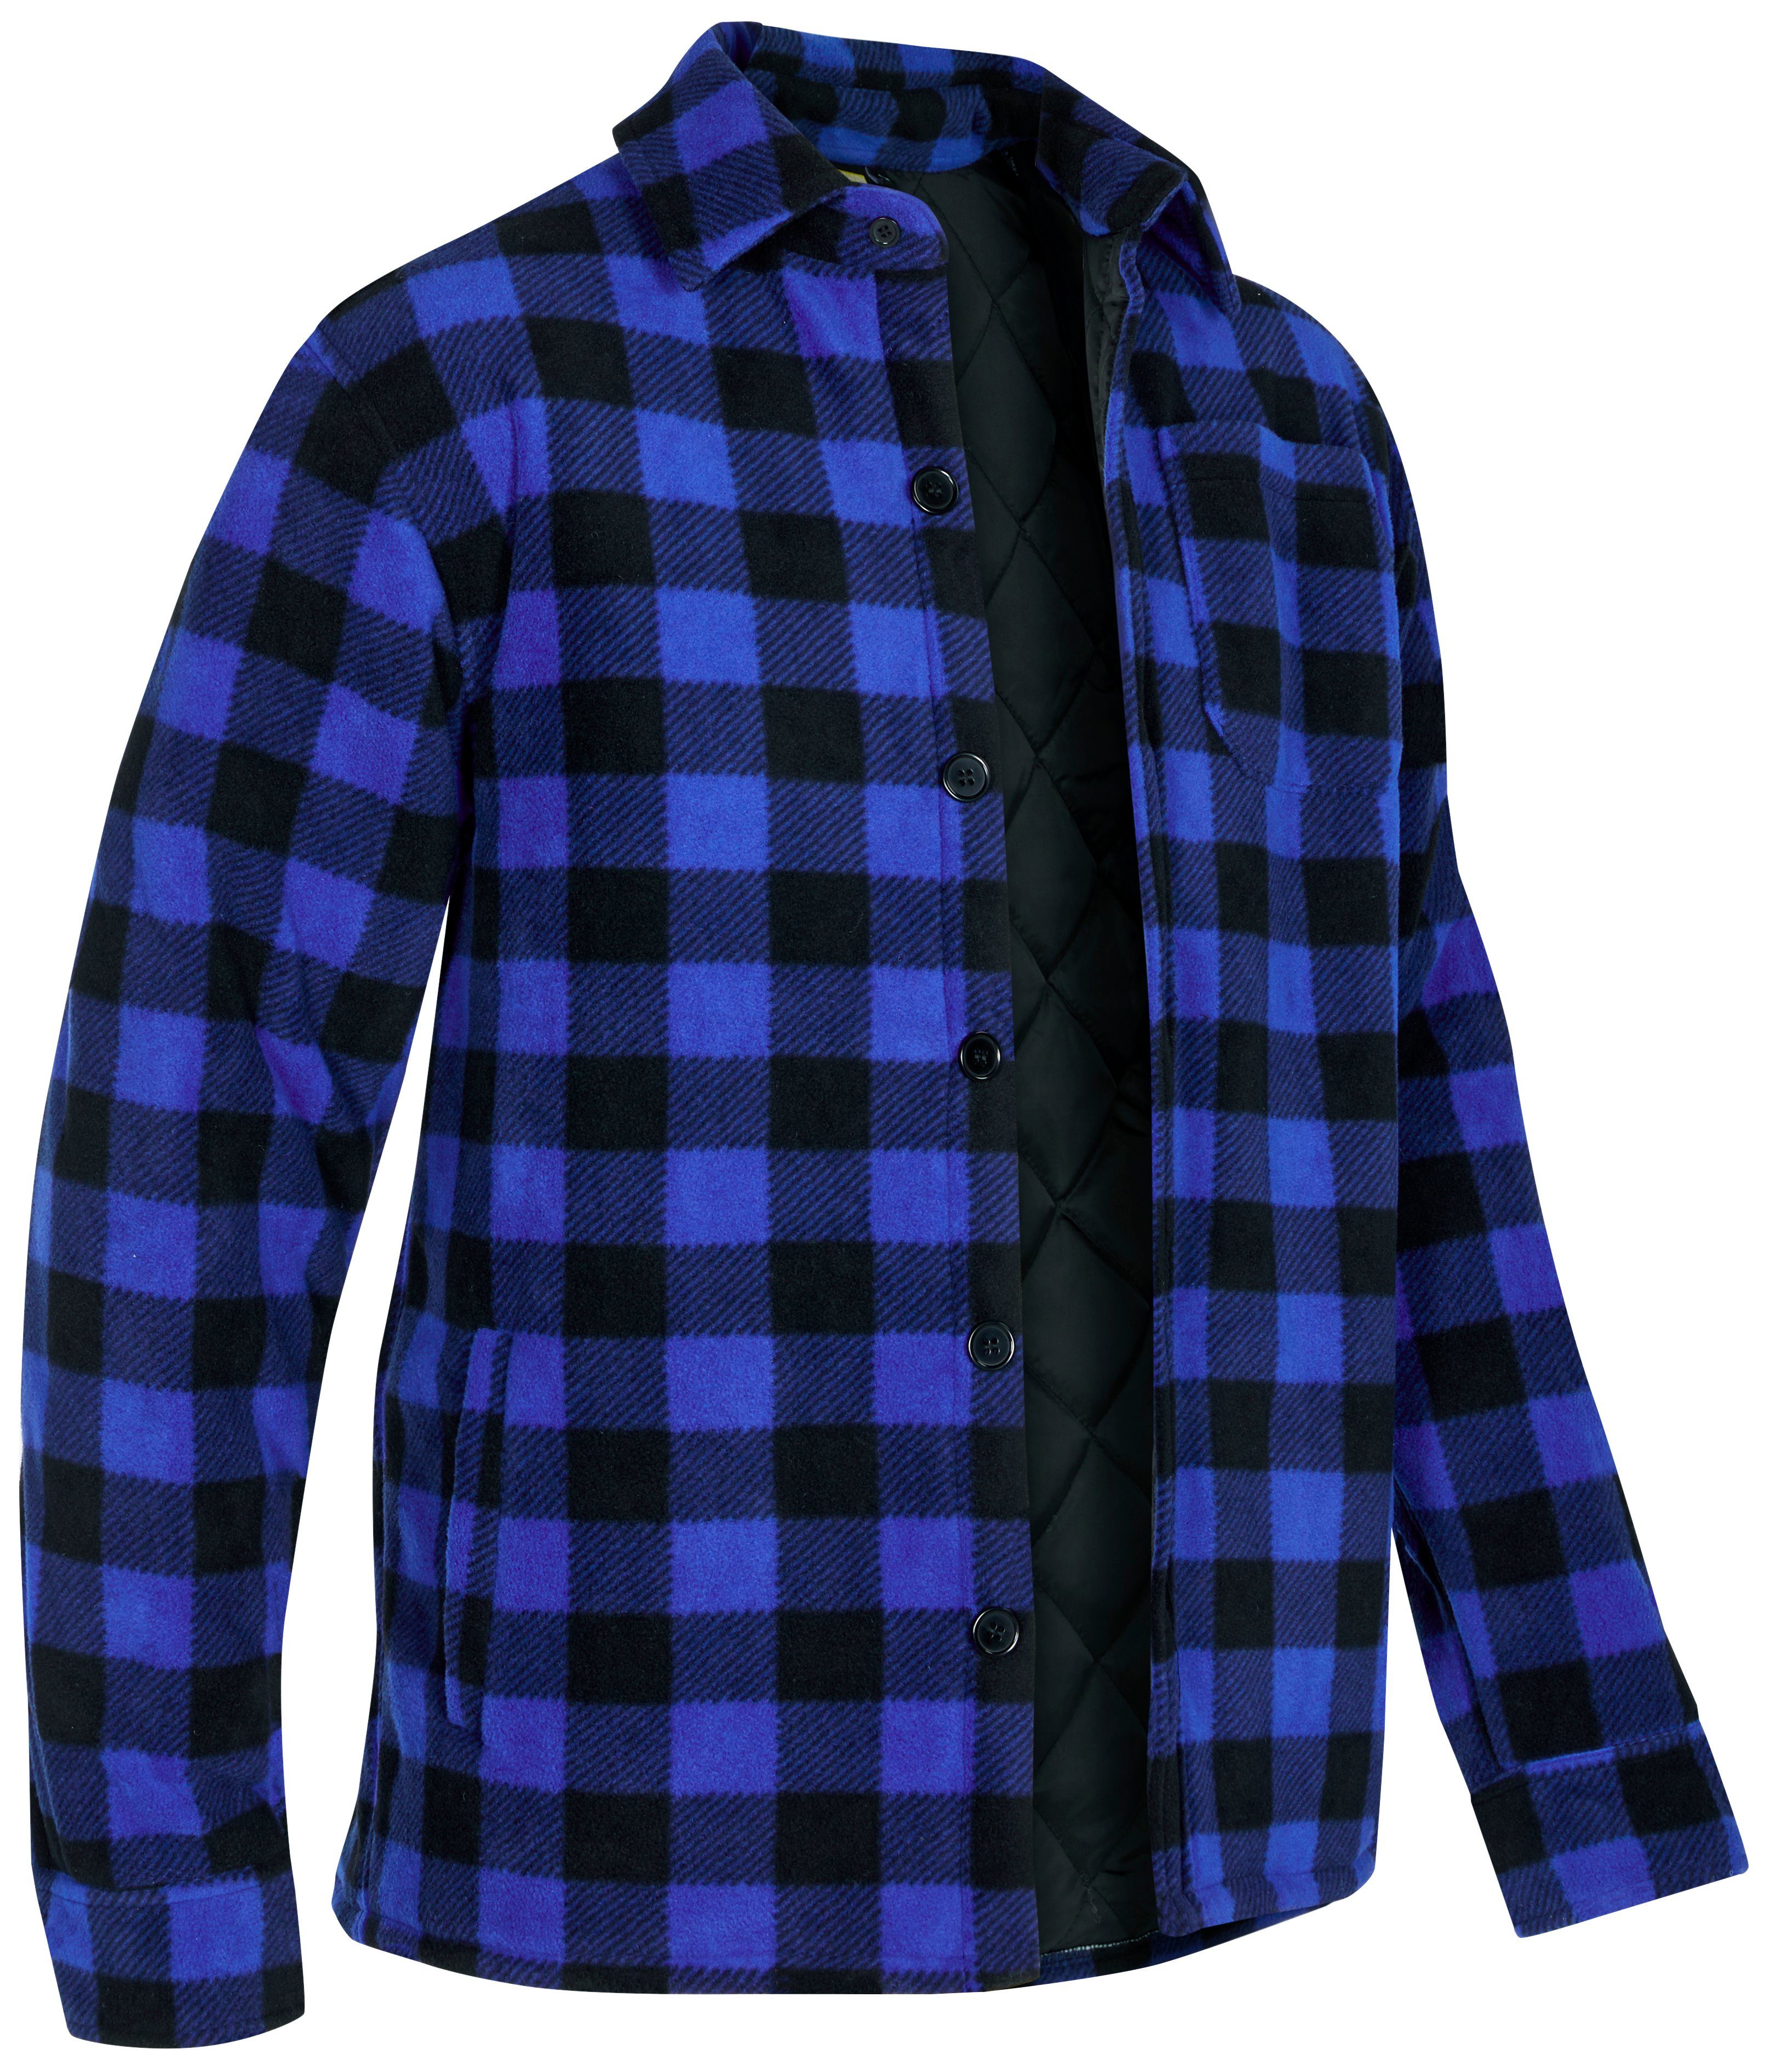 Northern Country Flanellhemd (als Jacke offen oder Hemd zugeknöpft zu  tragen) warm gefüttert, mit 5 Taschen, mit verlängertem Rücken, Flanellstoff